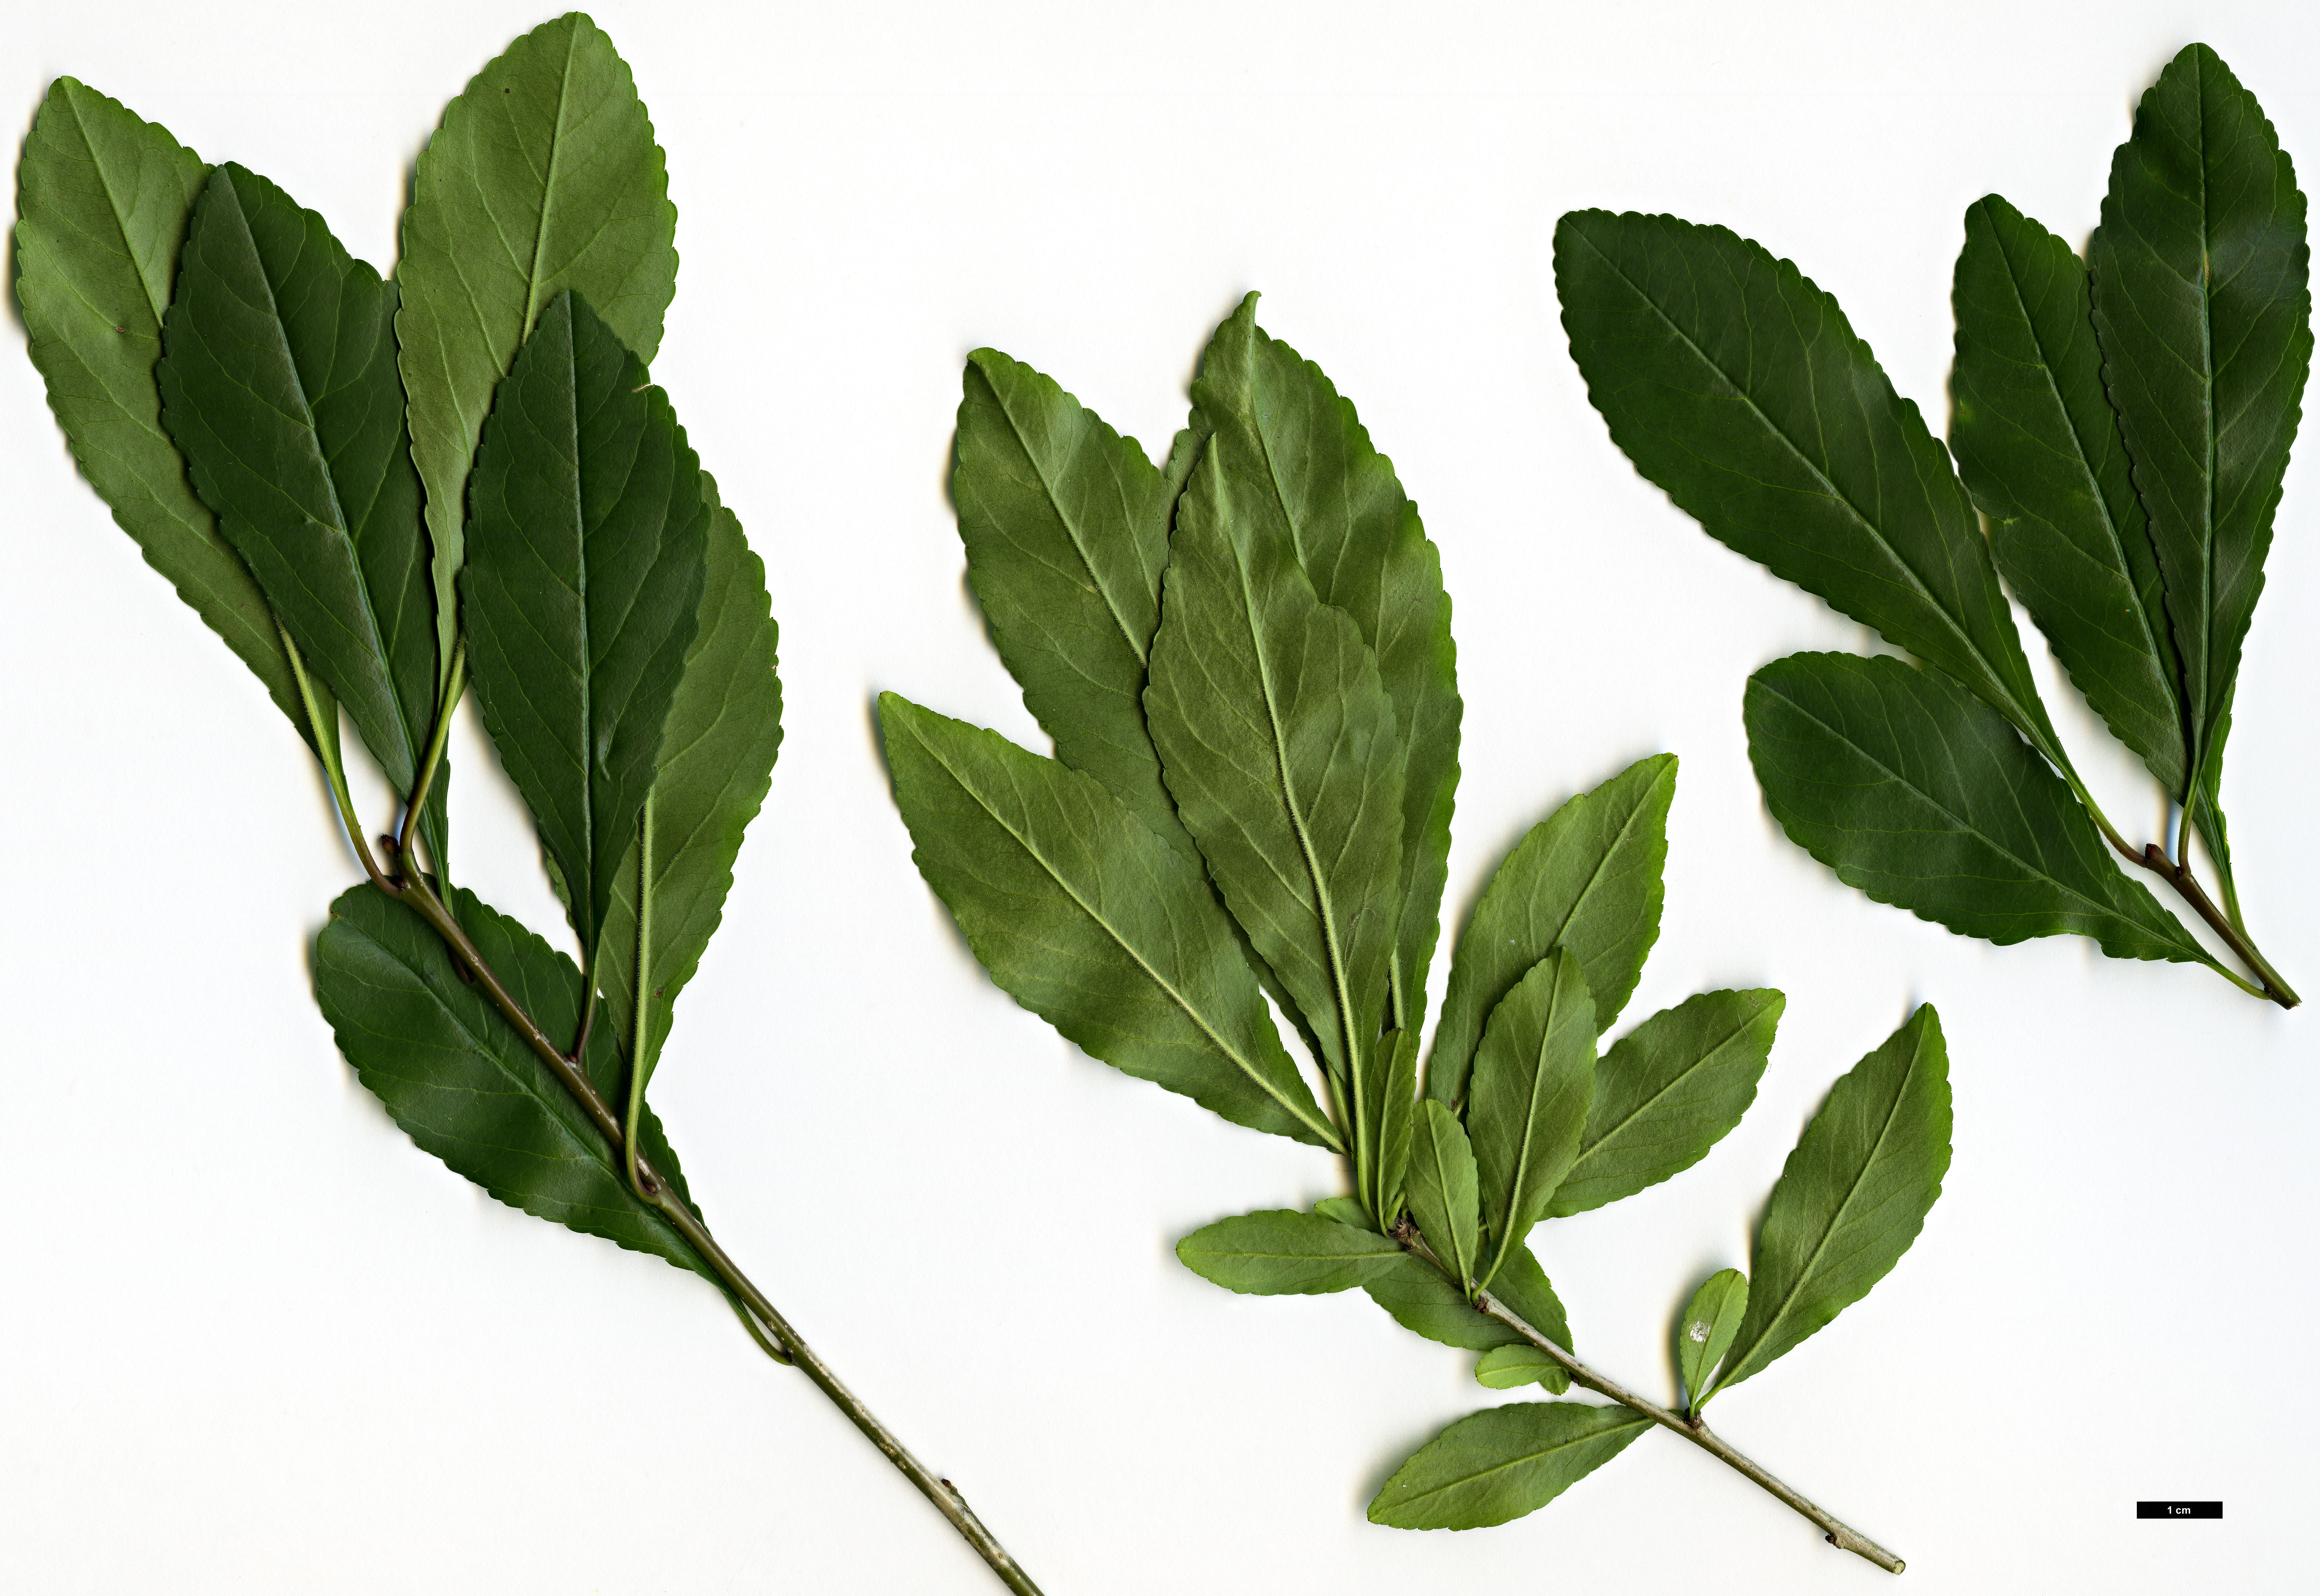 High resolution image: Family: Aquifoliaceae - Genus: Ilex - Taxon: decidua